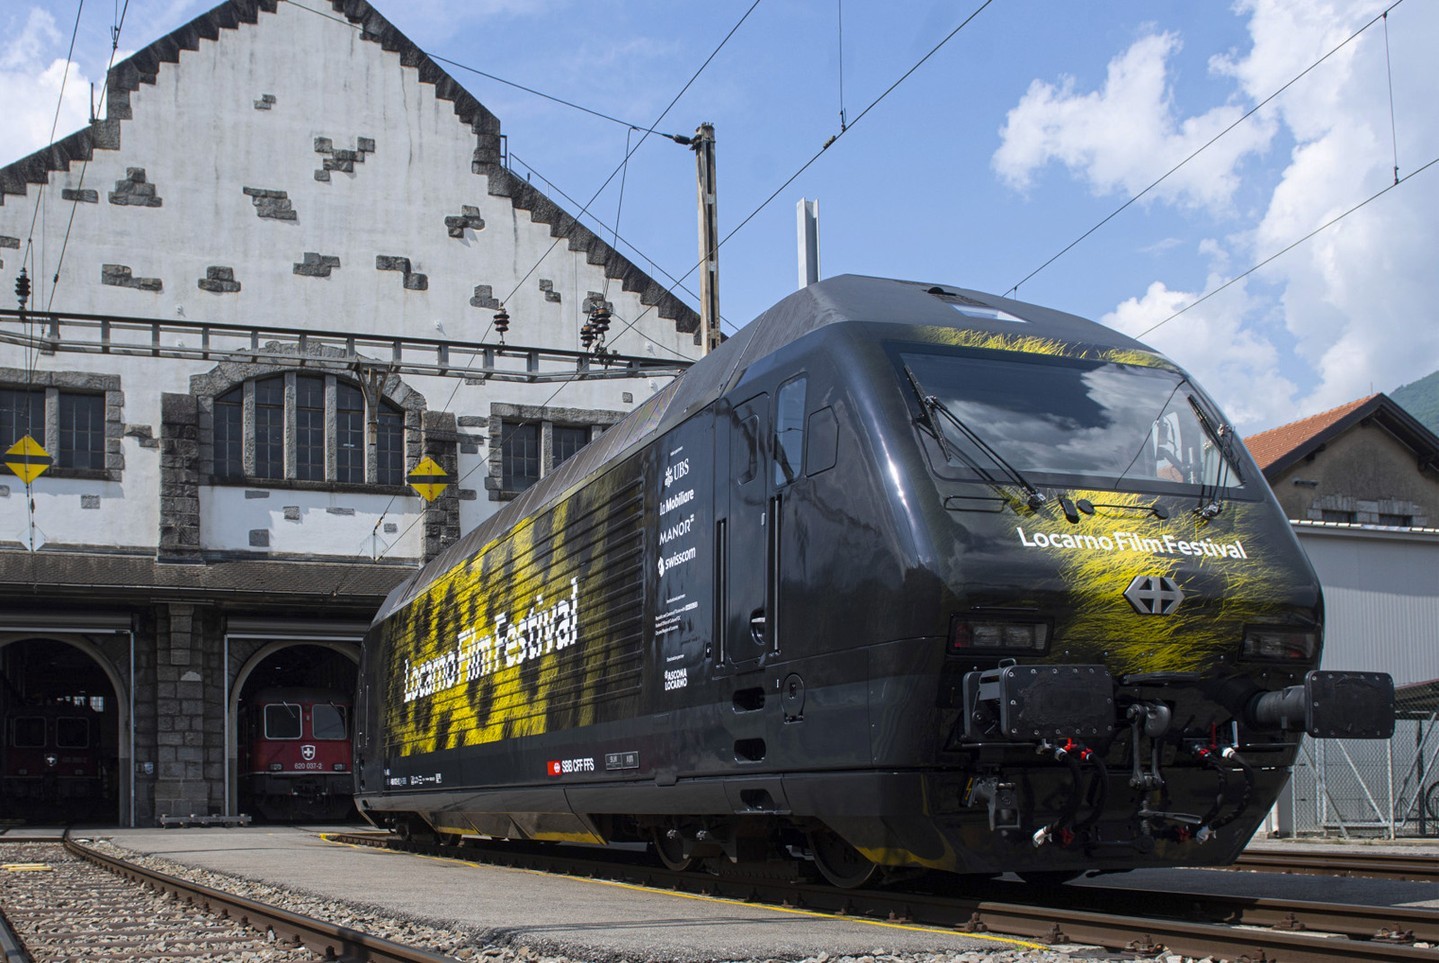 📷 by Locarno Film Festival 🇨🇭 Werbelok o’clock: 460 072 for Locarno Film Festival ⬆️ 
.
.
.
.
.
#SBB #Lok2000SBB #Lok2000 #Re460 #Re460SBB #Re460072 #railcolor #railcolordesign #railcolornews #railways #railways_of_europe #instatrain #ellok #electriclocomotive #locomotive #swisstrains #trains_of_switzerland #schweizerischebundesbahnen #SBBCFFFFS #Locarno #FilmFestival #LocarnoFilmFestival #Bellinzona #460072